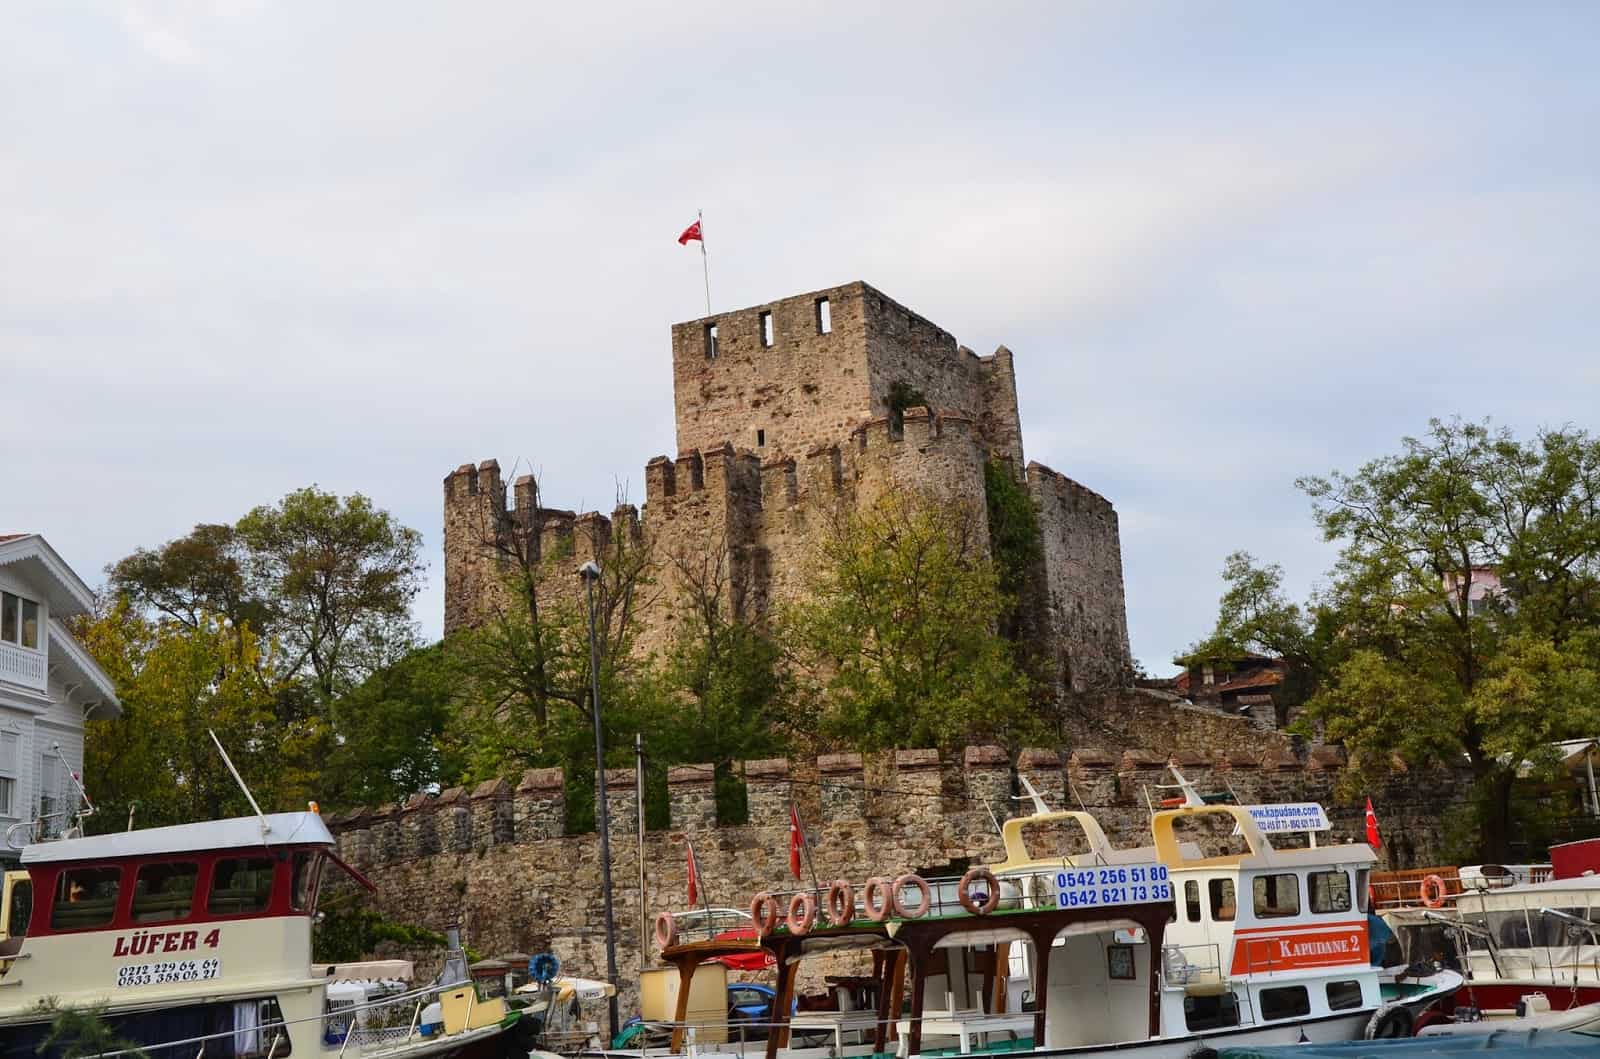 Anadolu Hisarı in Istanbul, Turkey